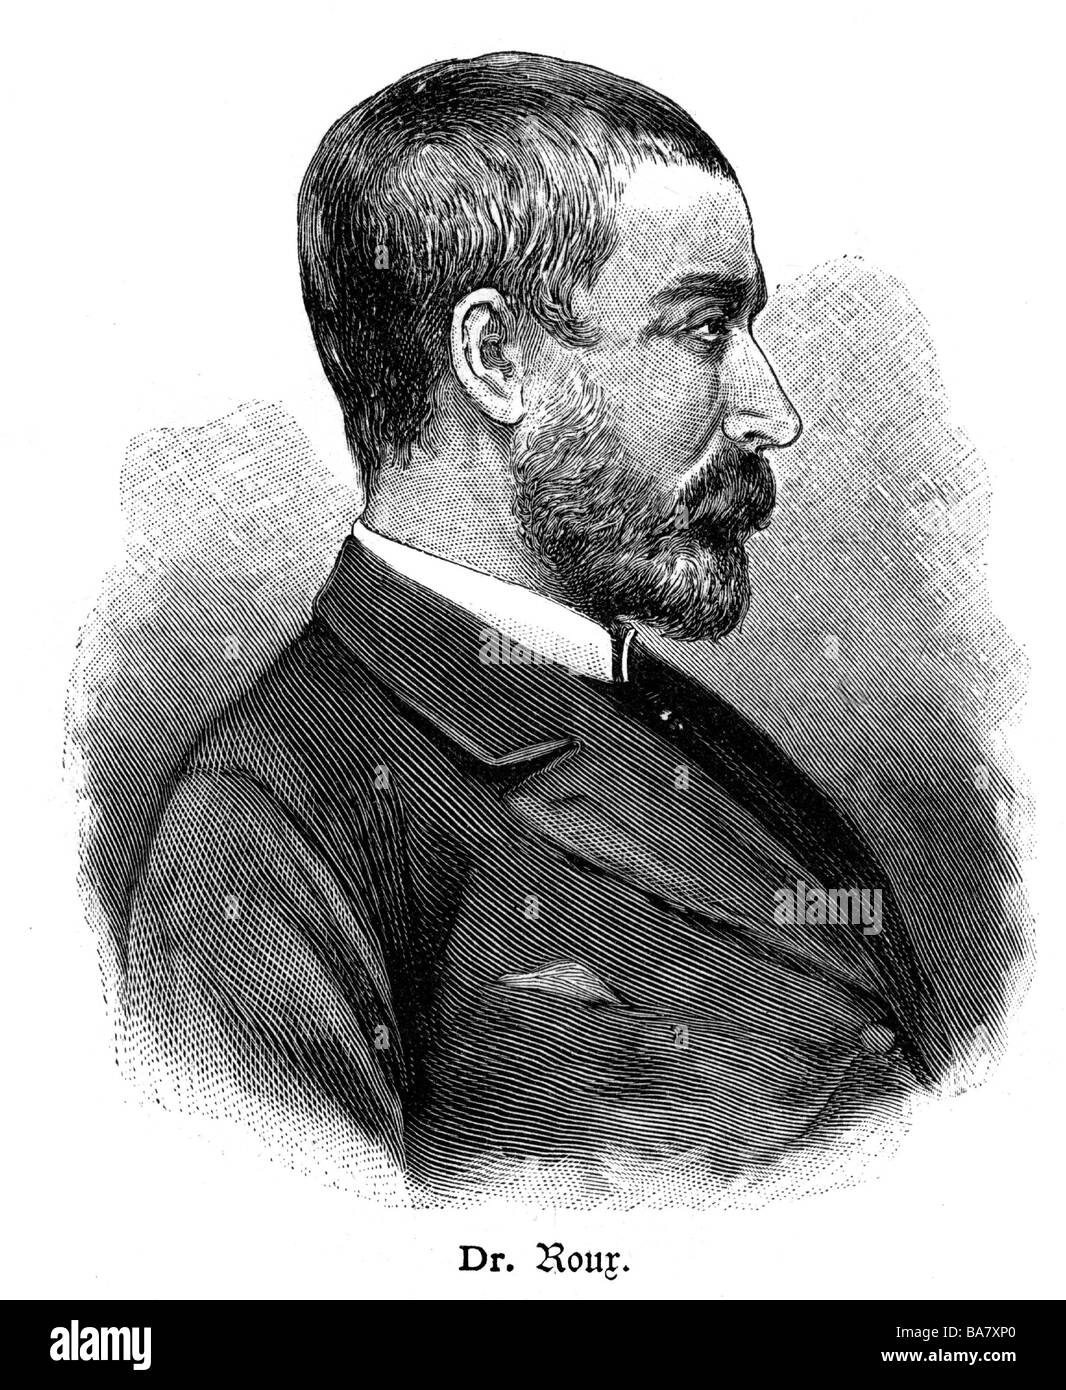 Roux, Pierre Paul Emile, 17.12.1853 - 3.11.1933, bactériologiste français, portrait, face latérale, gravure en bois Banque D'Images